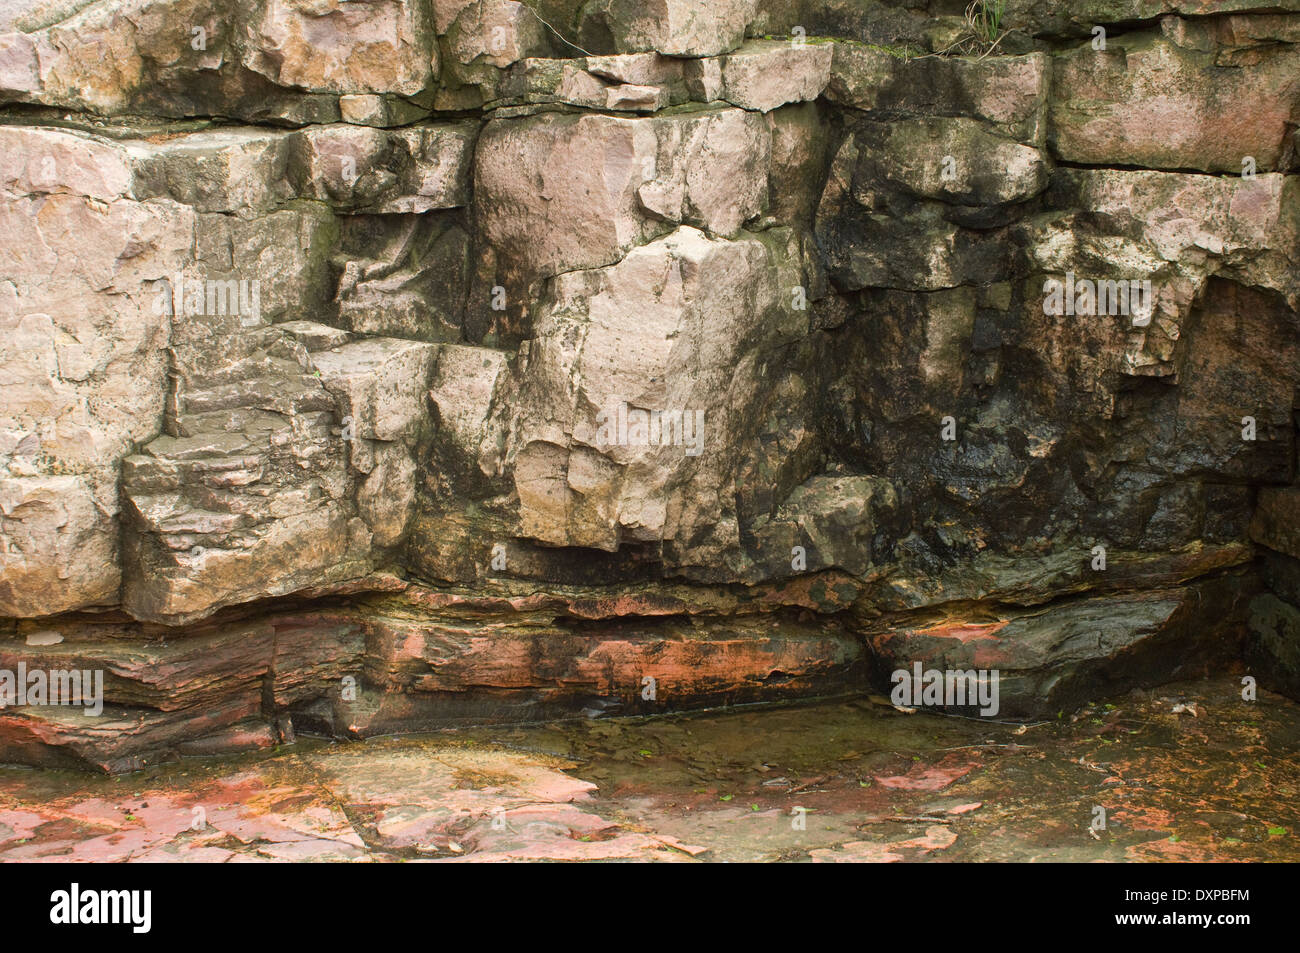 Steinbruch für Pipestone (untere Schicht), verwendet Native American Rohre zu machen, Pipestone National Monument, Minnesota. Digitale Fotografie Stockfoto